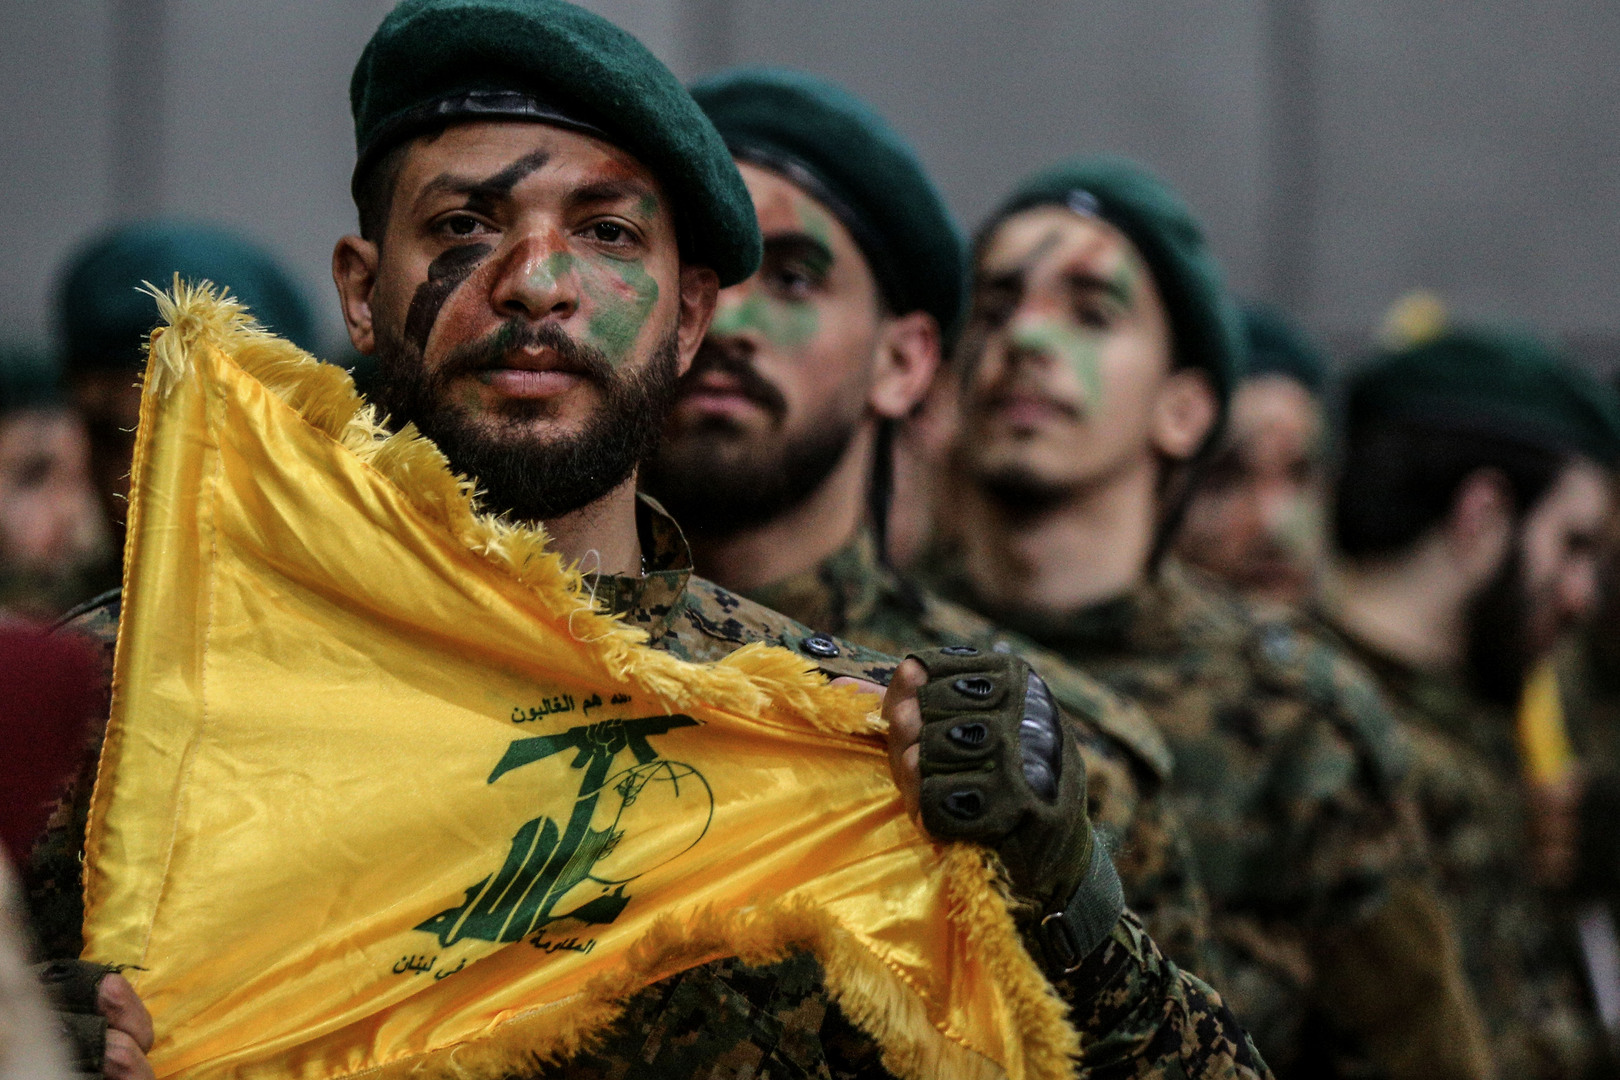 تقرير عبري يكشف أسماء أبرز قادة حزب الله الذين اغتالتهم إسرائيل منذ بداية الحرب